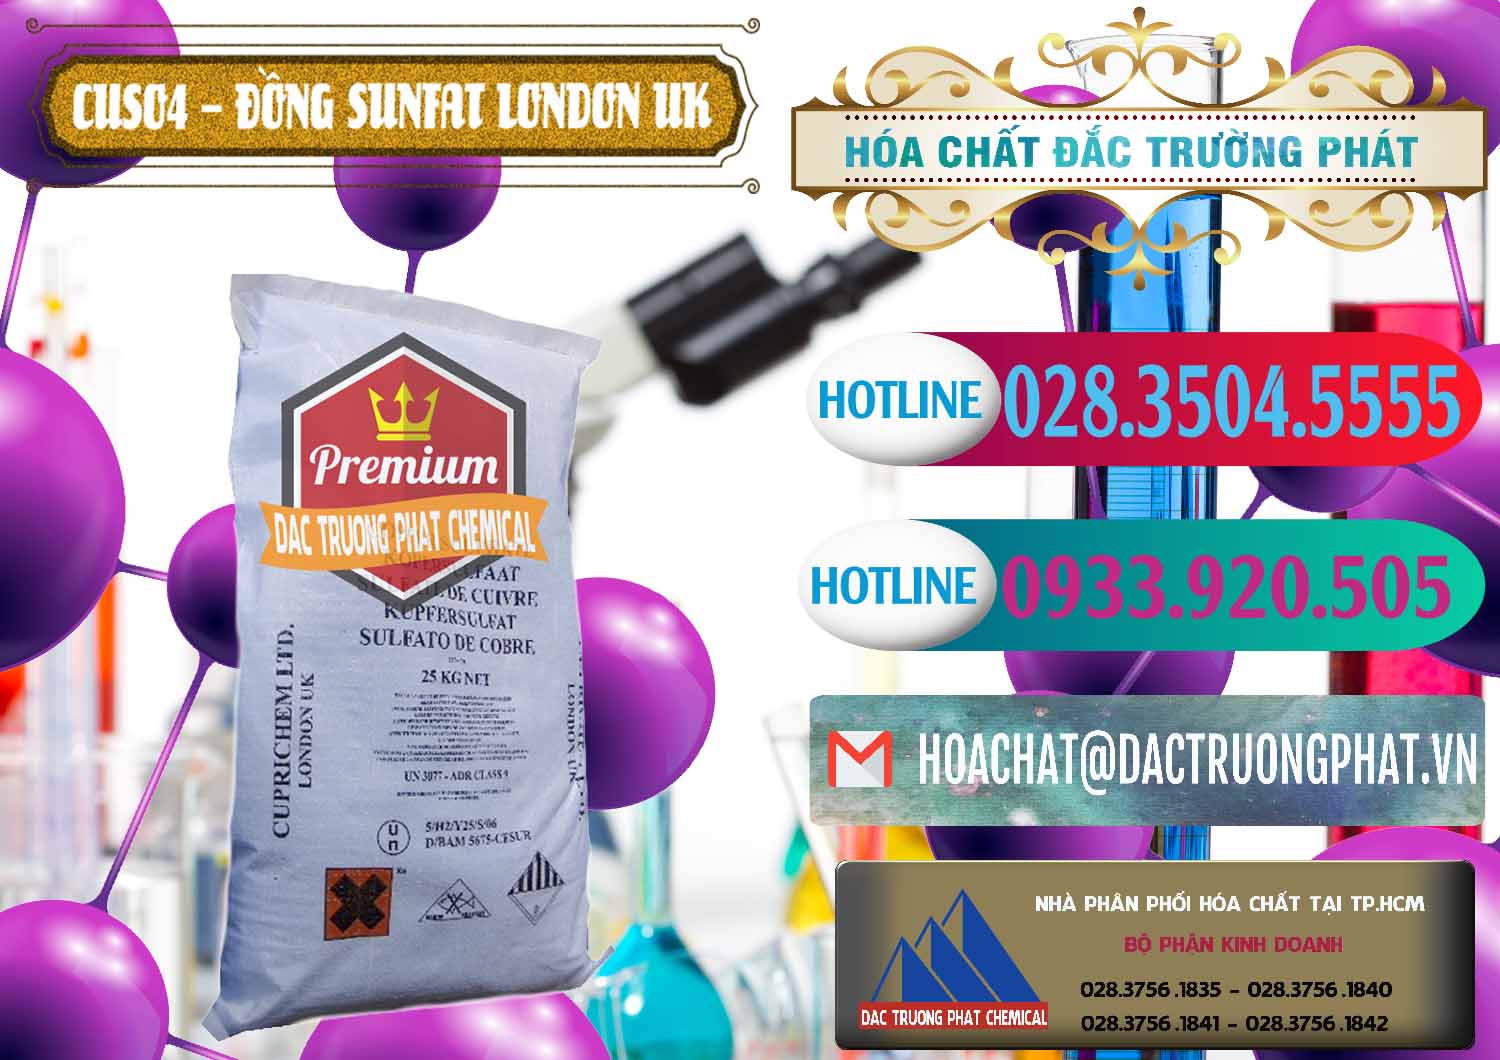 Công ty bán và cung ứng CuSO4 – Đồng Sunfat Anh Uk Kingdoms - 0478 - Chuyên nhập khẩu _ cung cấp hóa chất tại TP.HCM - truongphat.vn